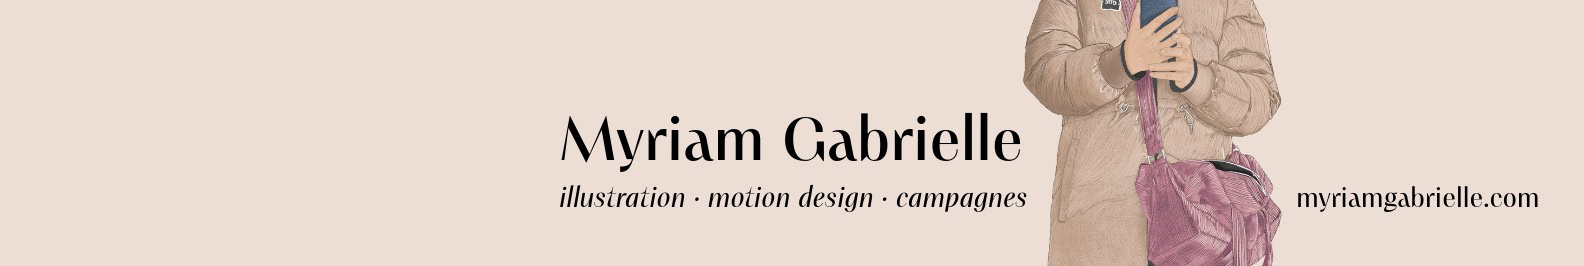 Banner de perfil de Myriam Gabrielle P